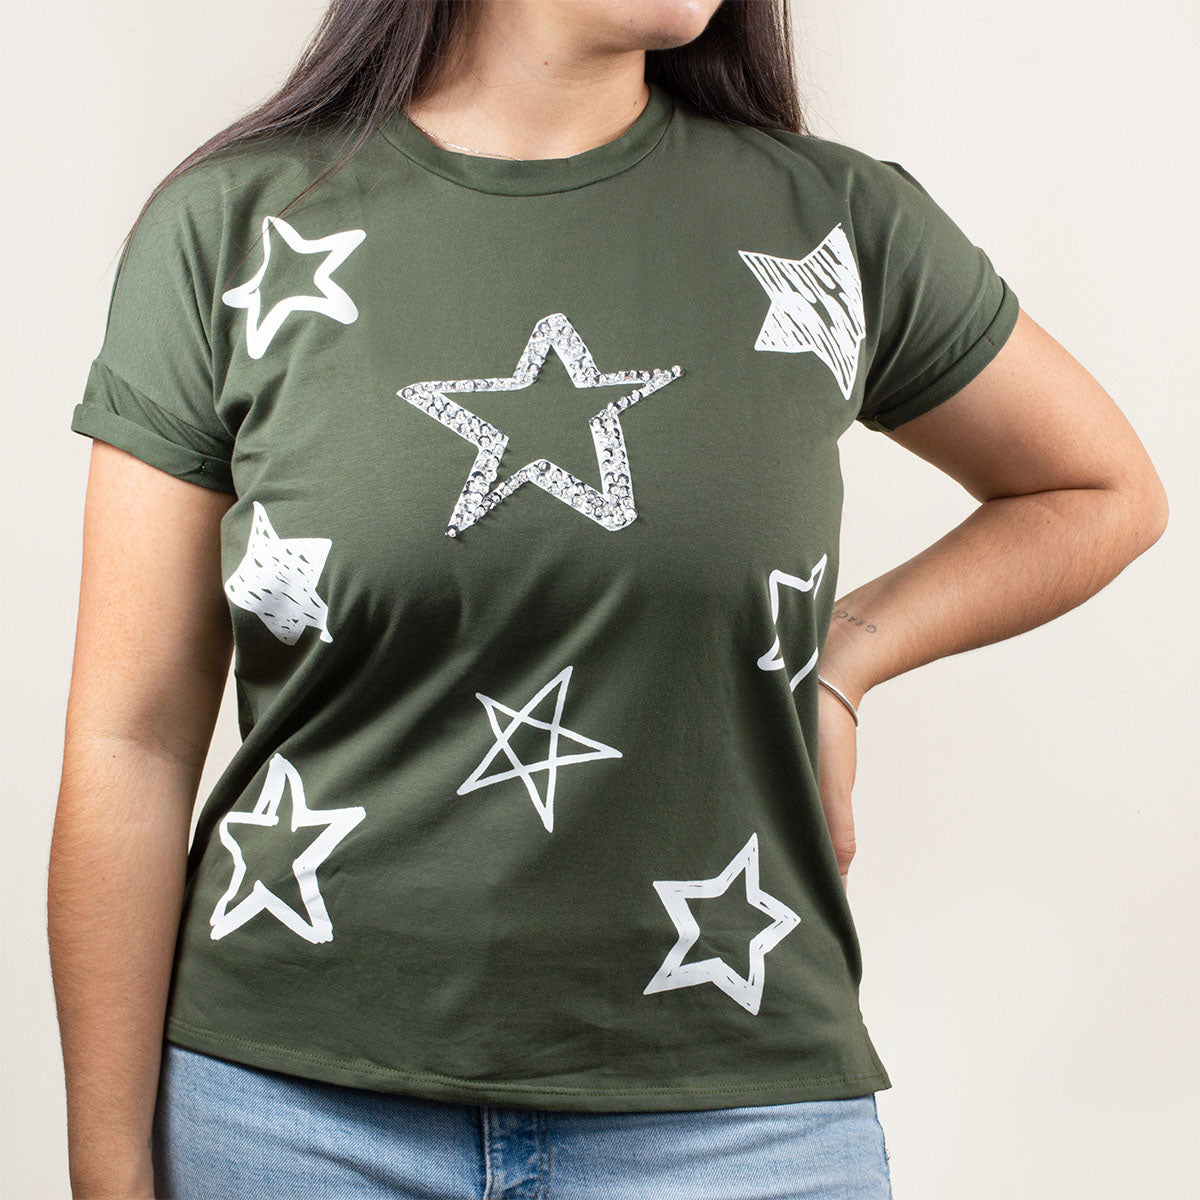 Camiseta básica color verde militar con estampado de estrellas